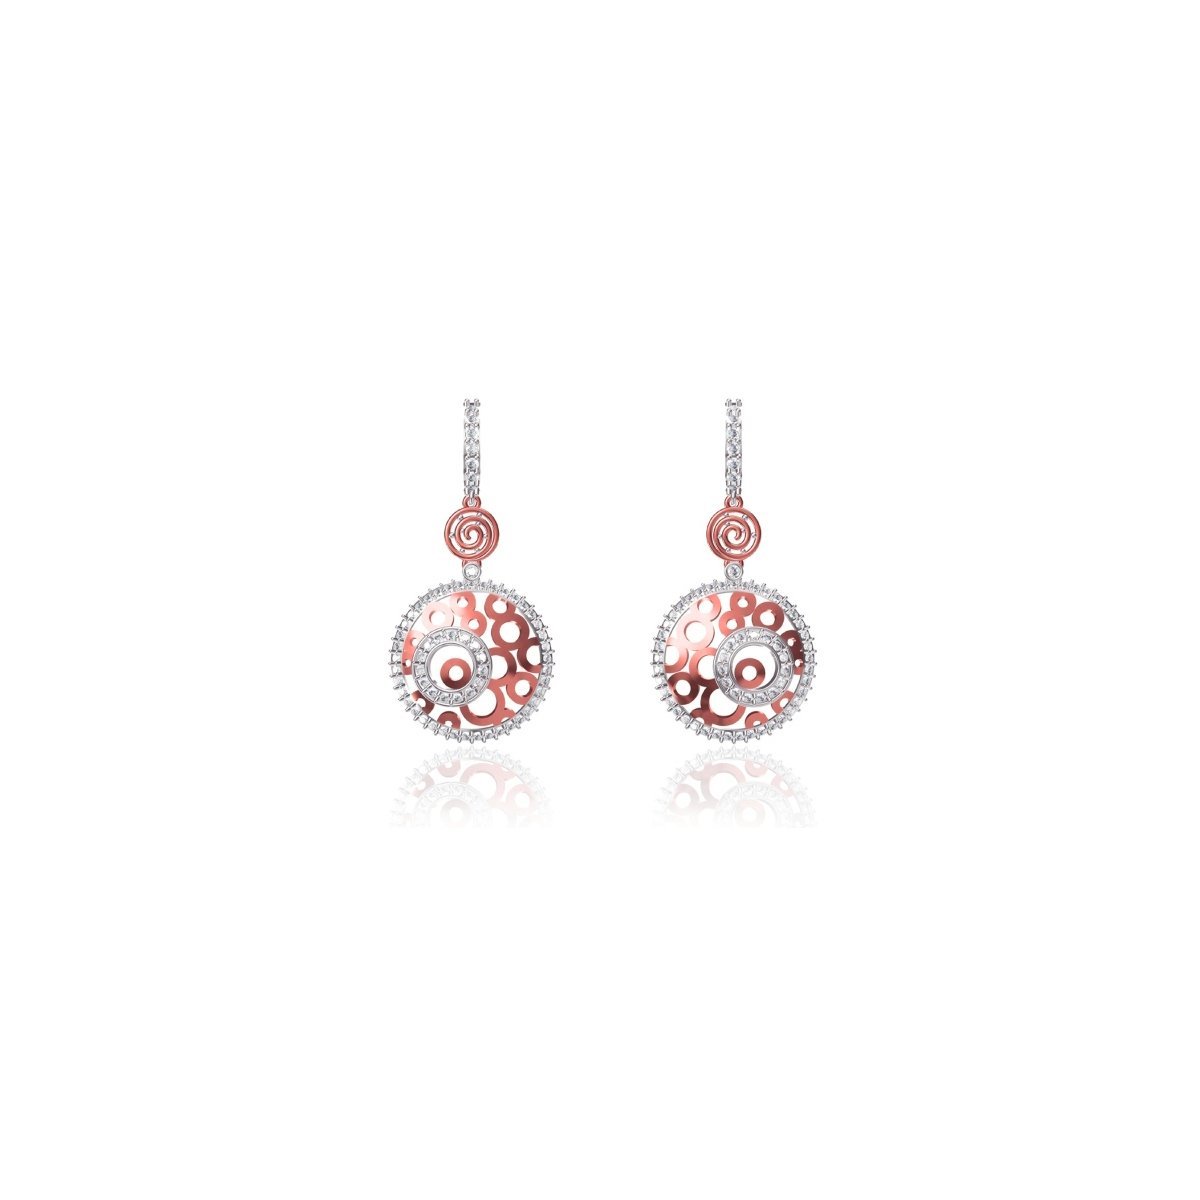 Ruby Earrings. Red Stud Earrings. Big Stud Earrings. Rhinestone Stud  Earrings. Ruby Crystal Earrings. Estate Jewelry, Women Gift - Etsy